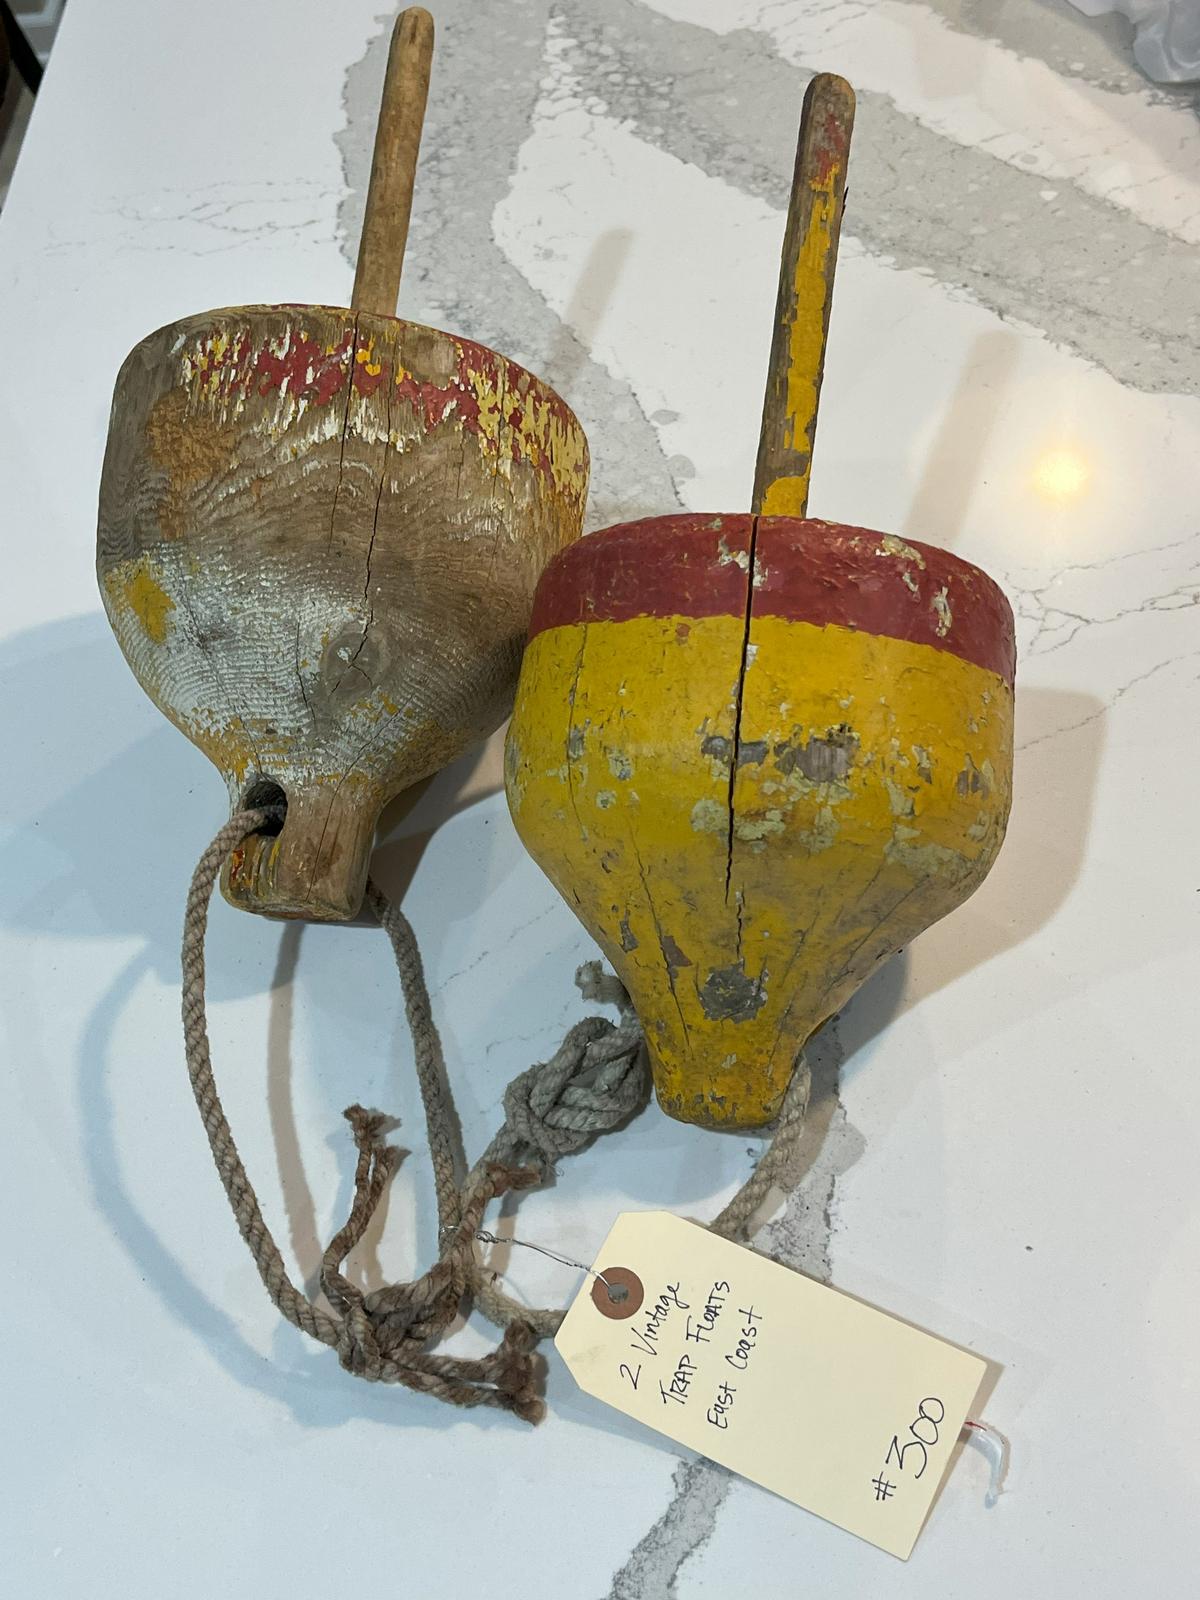 2 Antique Ocean Crab Trap Floats